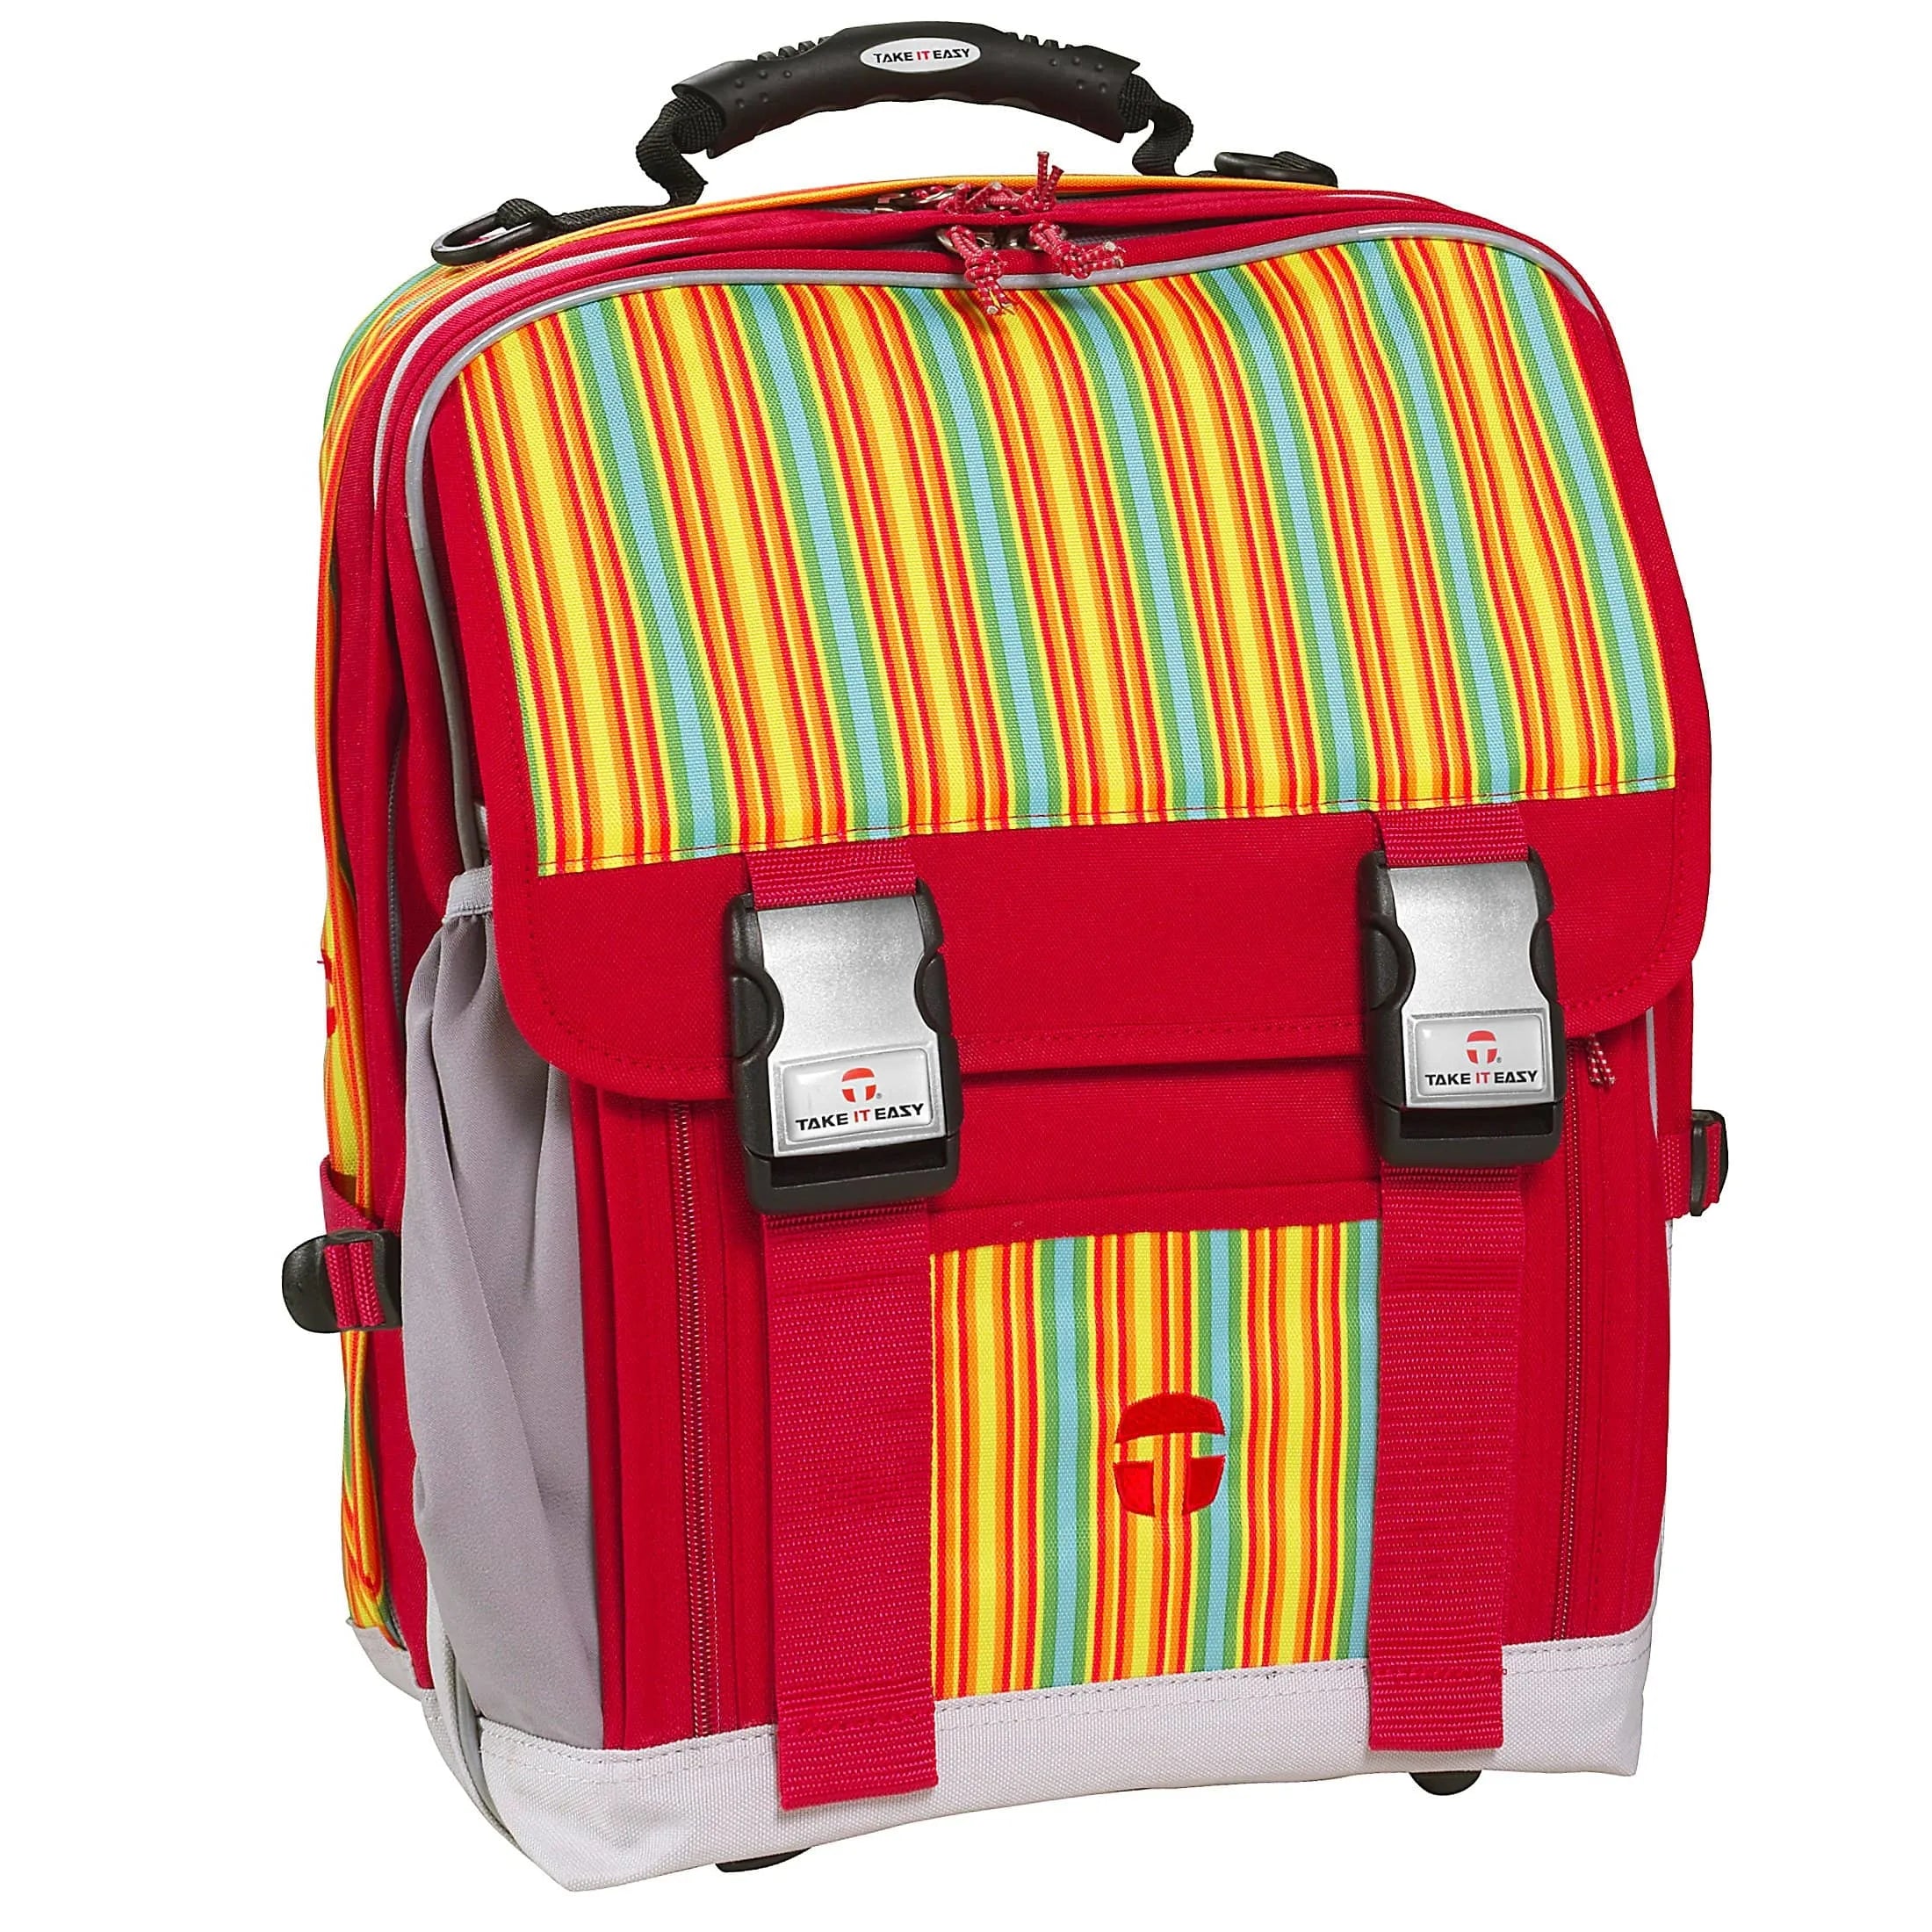 Take it Easy Actionbags sac à dos scolaire London 40 cm - couleur de rêve